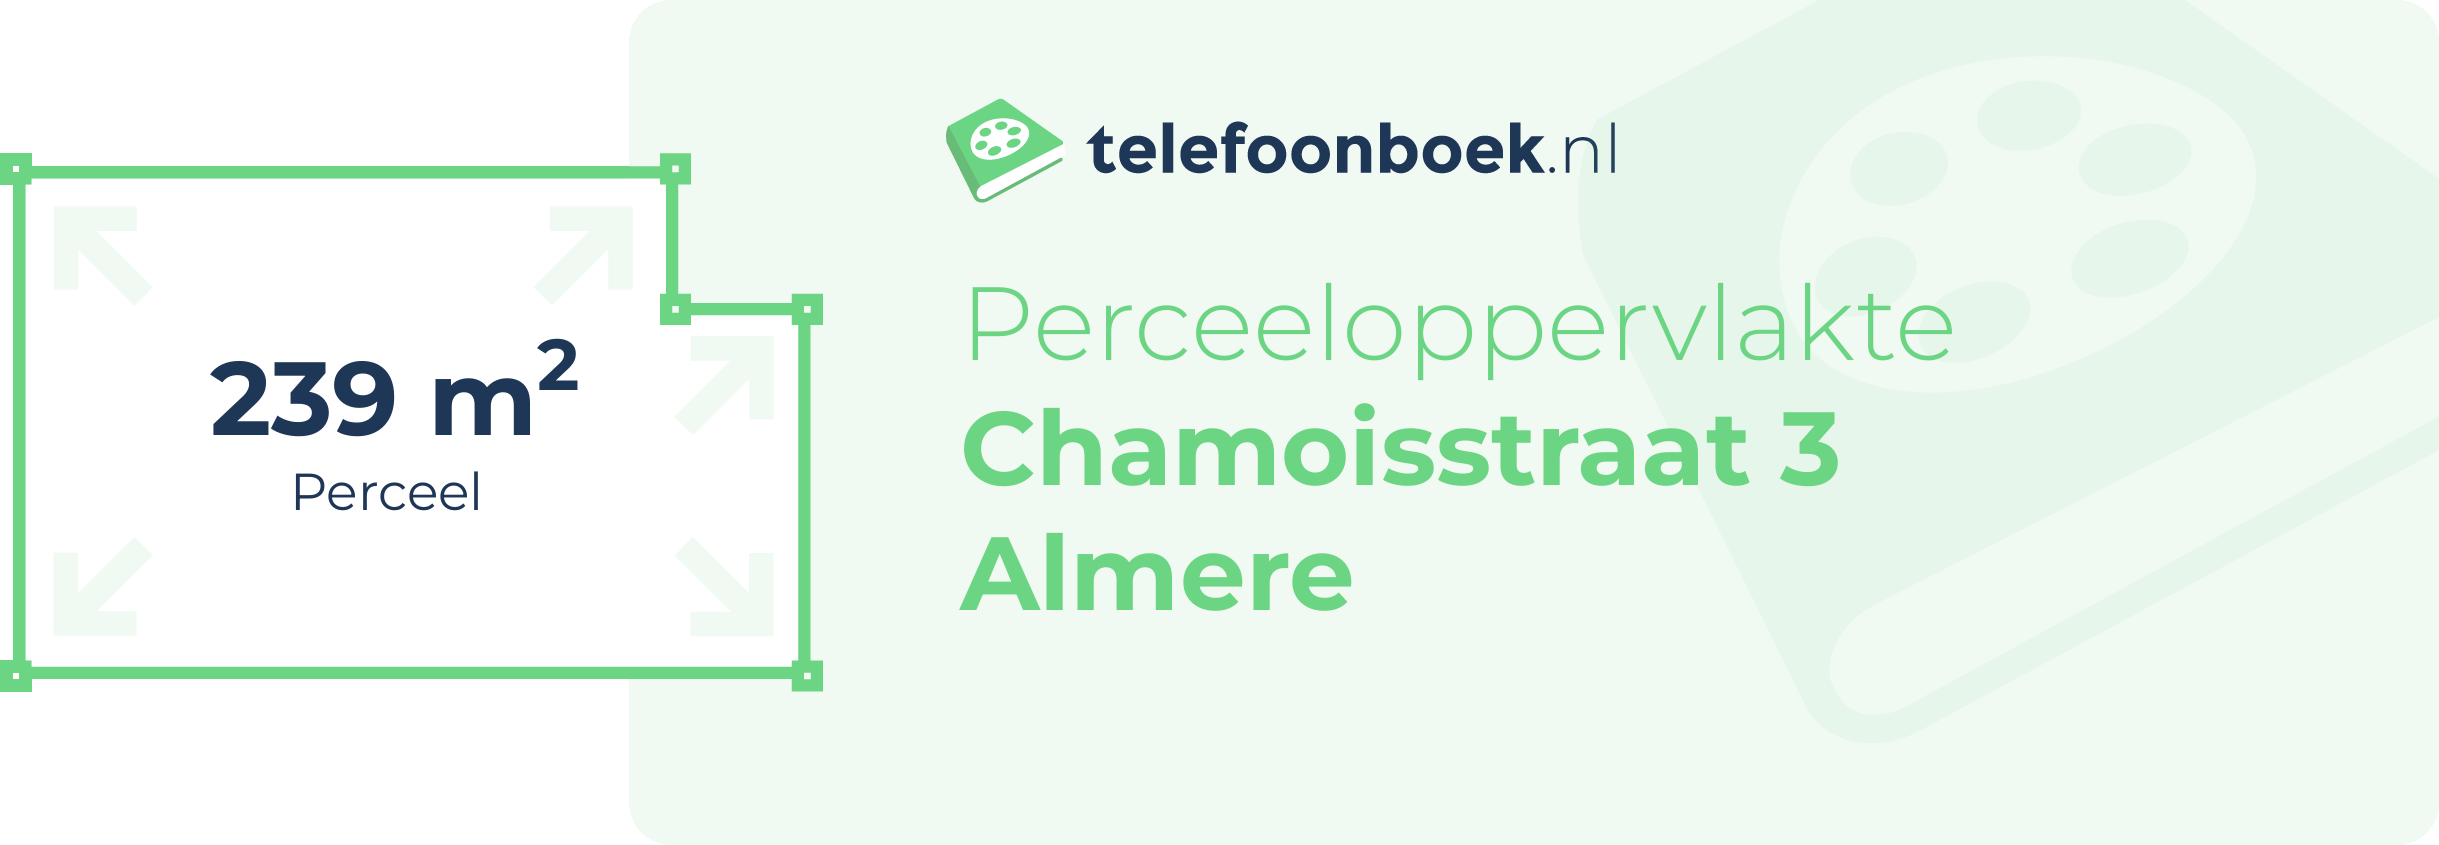 Perceeloppervlakte Chamoisstraat 3 Almere